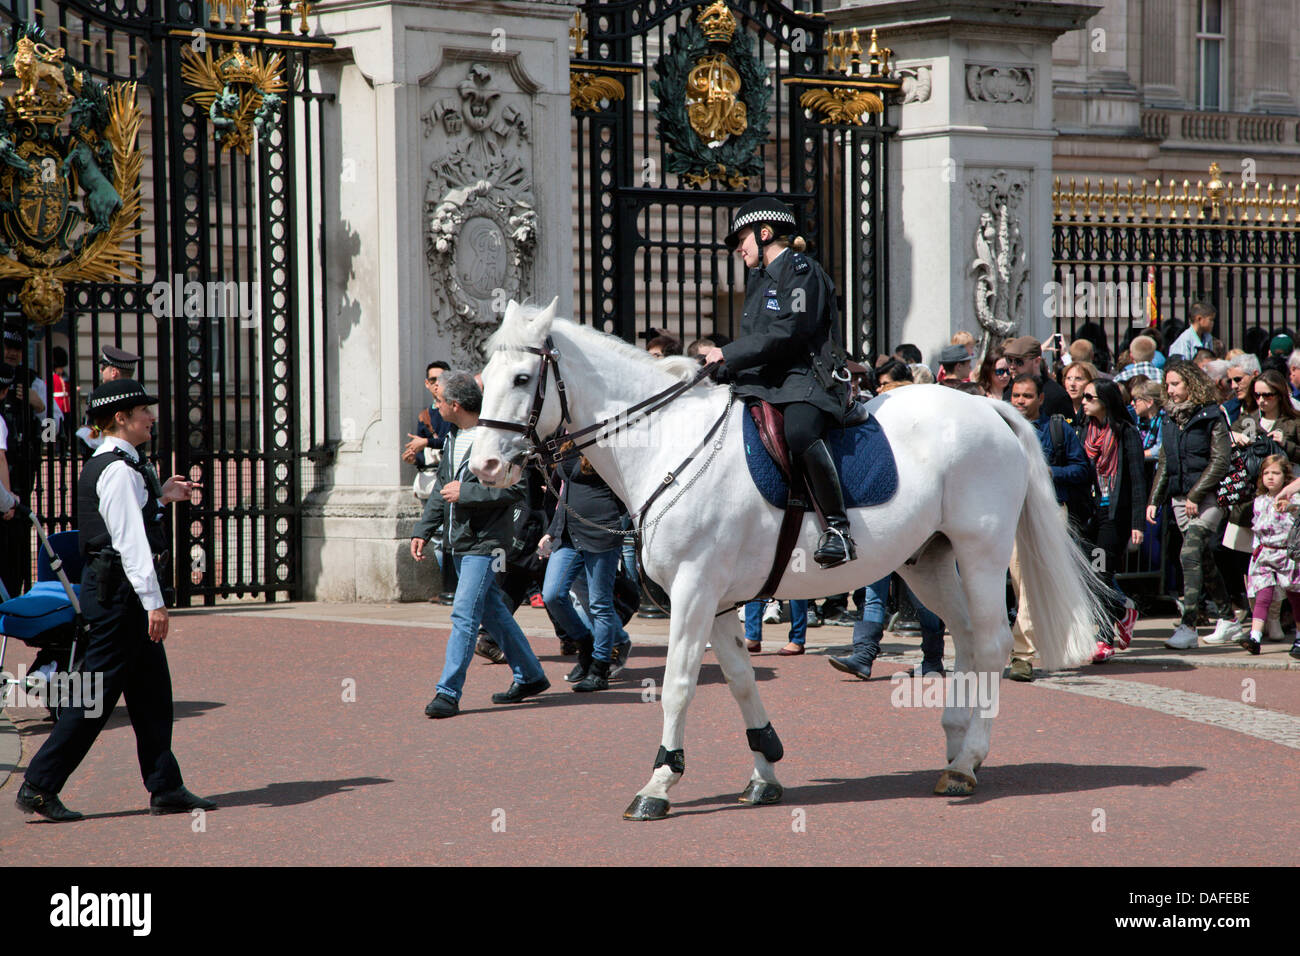 LONDON - 17 Mai: Britische königliche Garde auf Pferd Reiten und führen Sie die Wachablösung im Buckingham Palace am 17. Mai 2013 Stockfoto